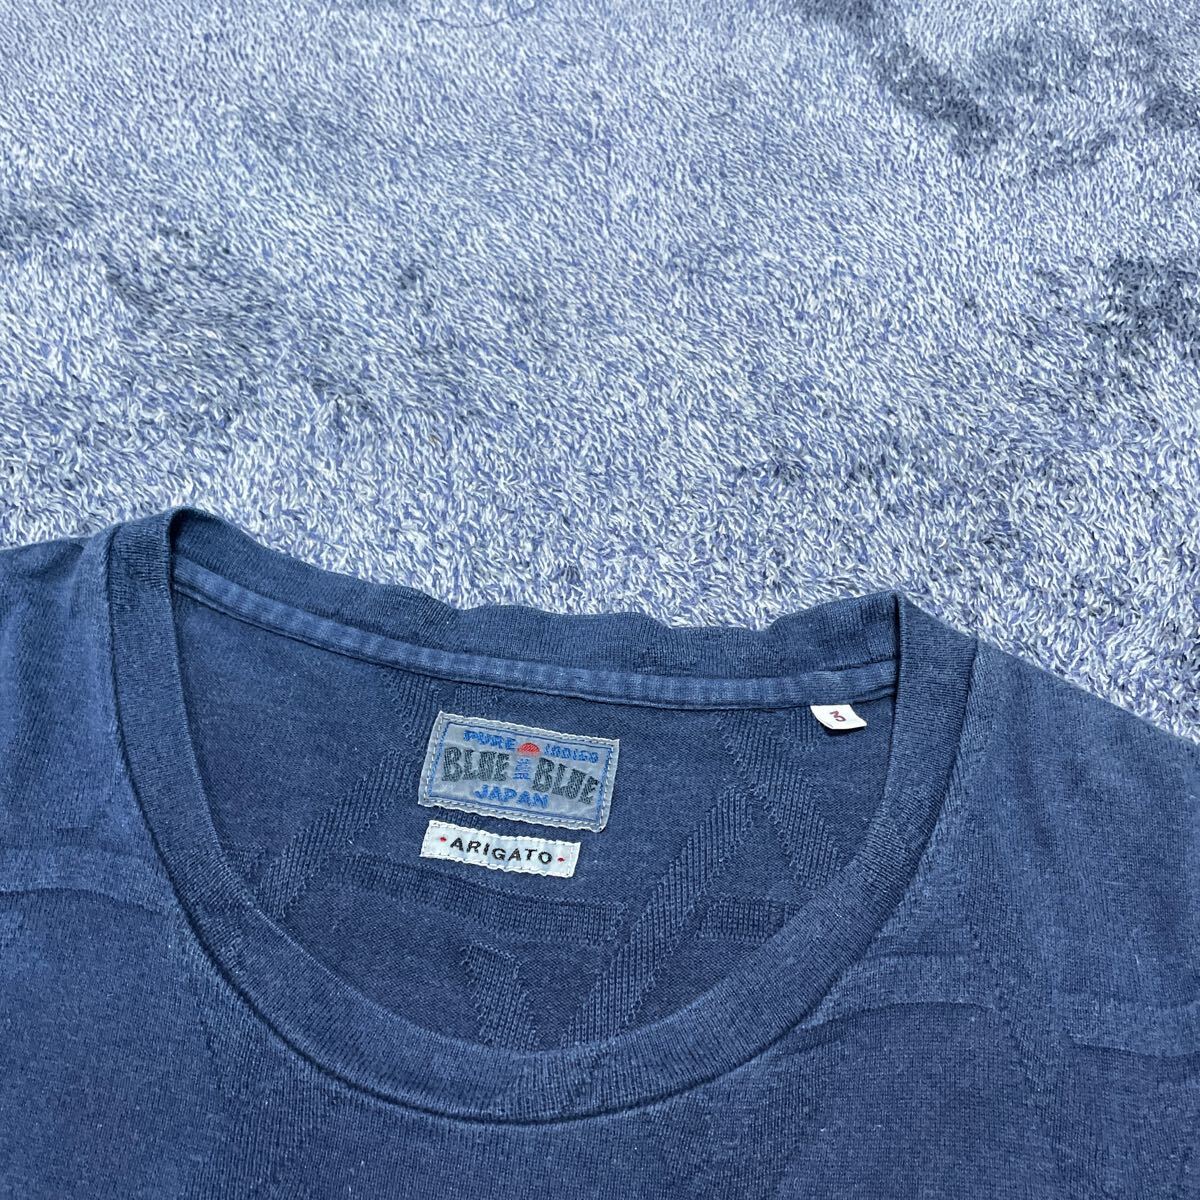 BLUE BLUE JAPAN PURE INDIGO ブルーブルージャパン インディゴ染め 半袖Tシャツ メンズサイズ3 ARIGATOの画像4